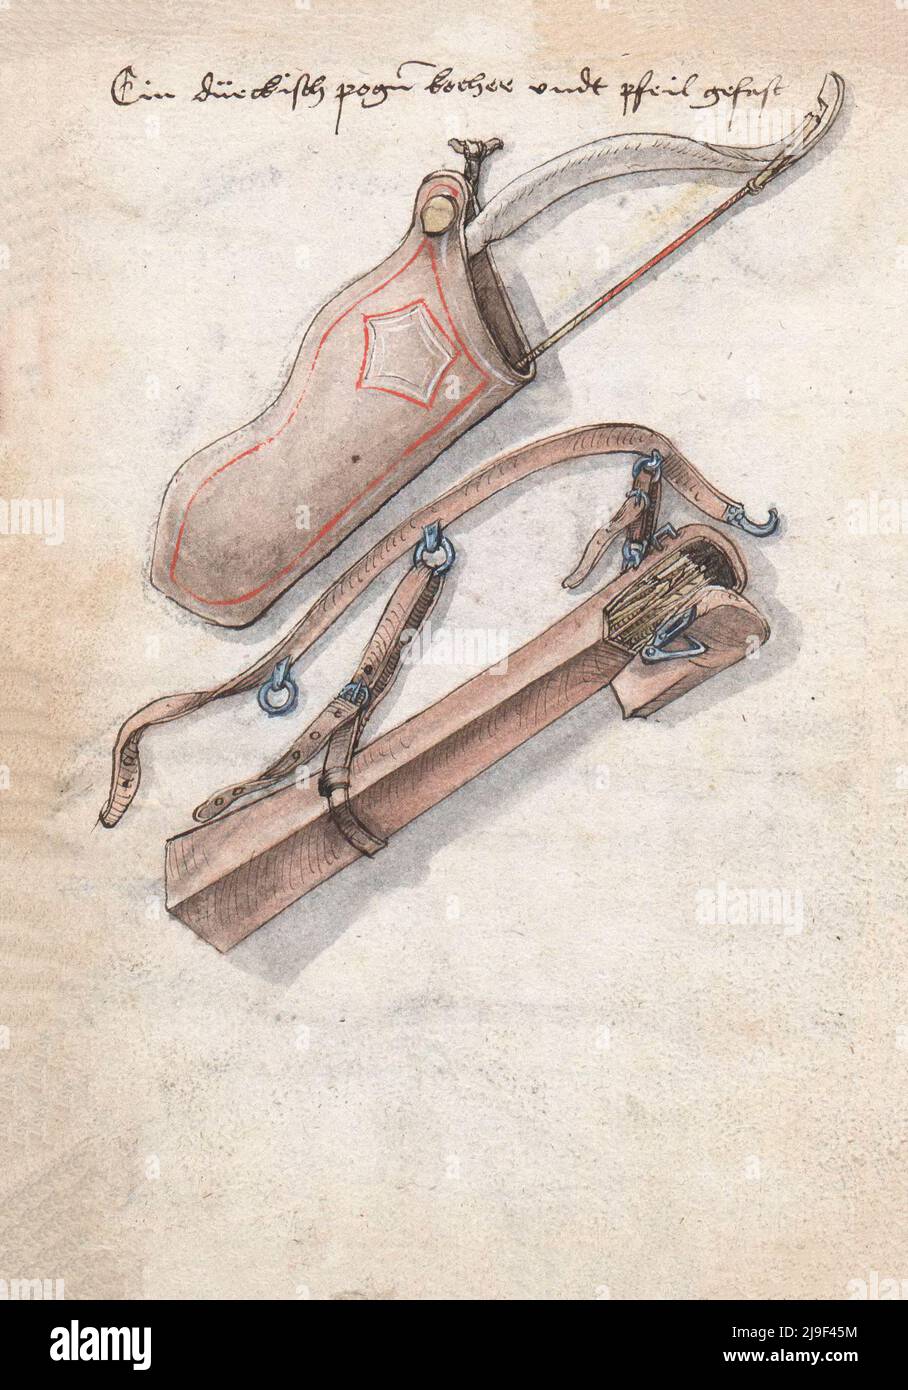 Illustrazione medievale di arco con fremito e frecce in quever. Gli strumenti di Martin Löffelholz (1505) Löffelholtz Codex. Illustrazioni e descrizioni Foto Stock